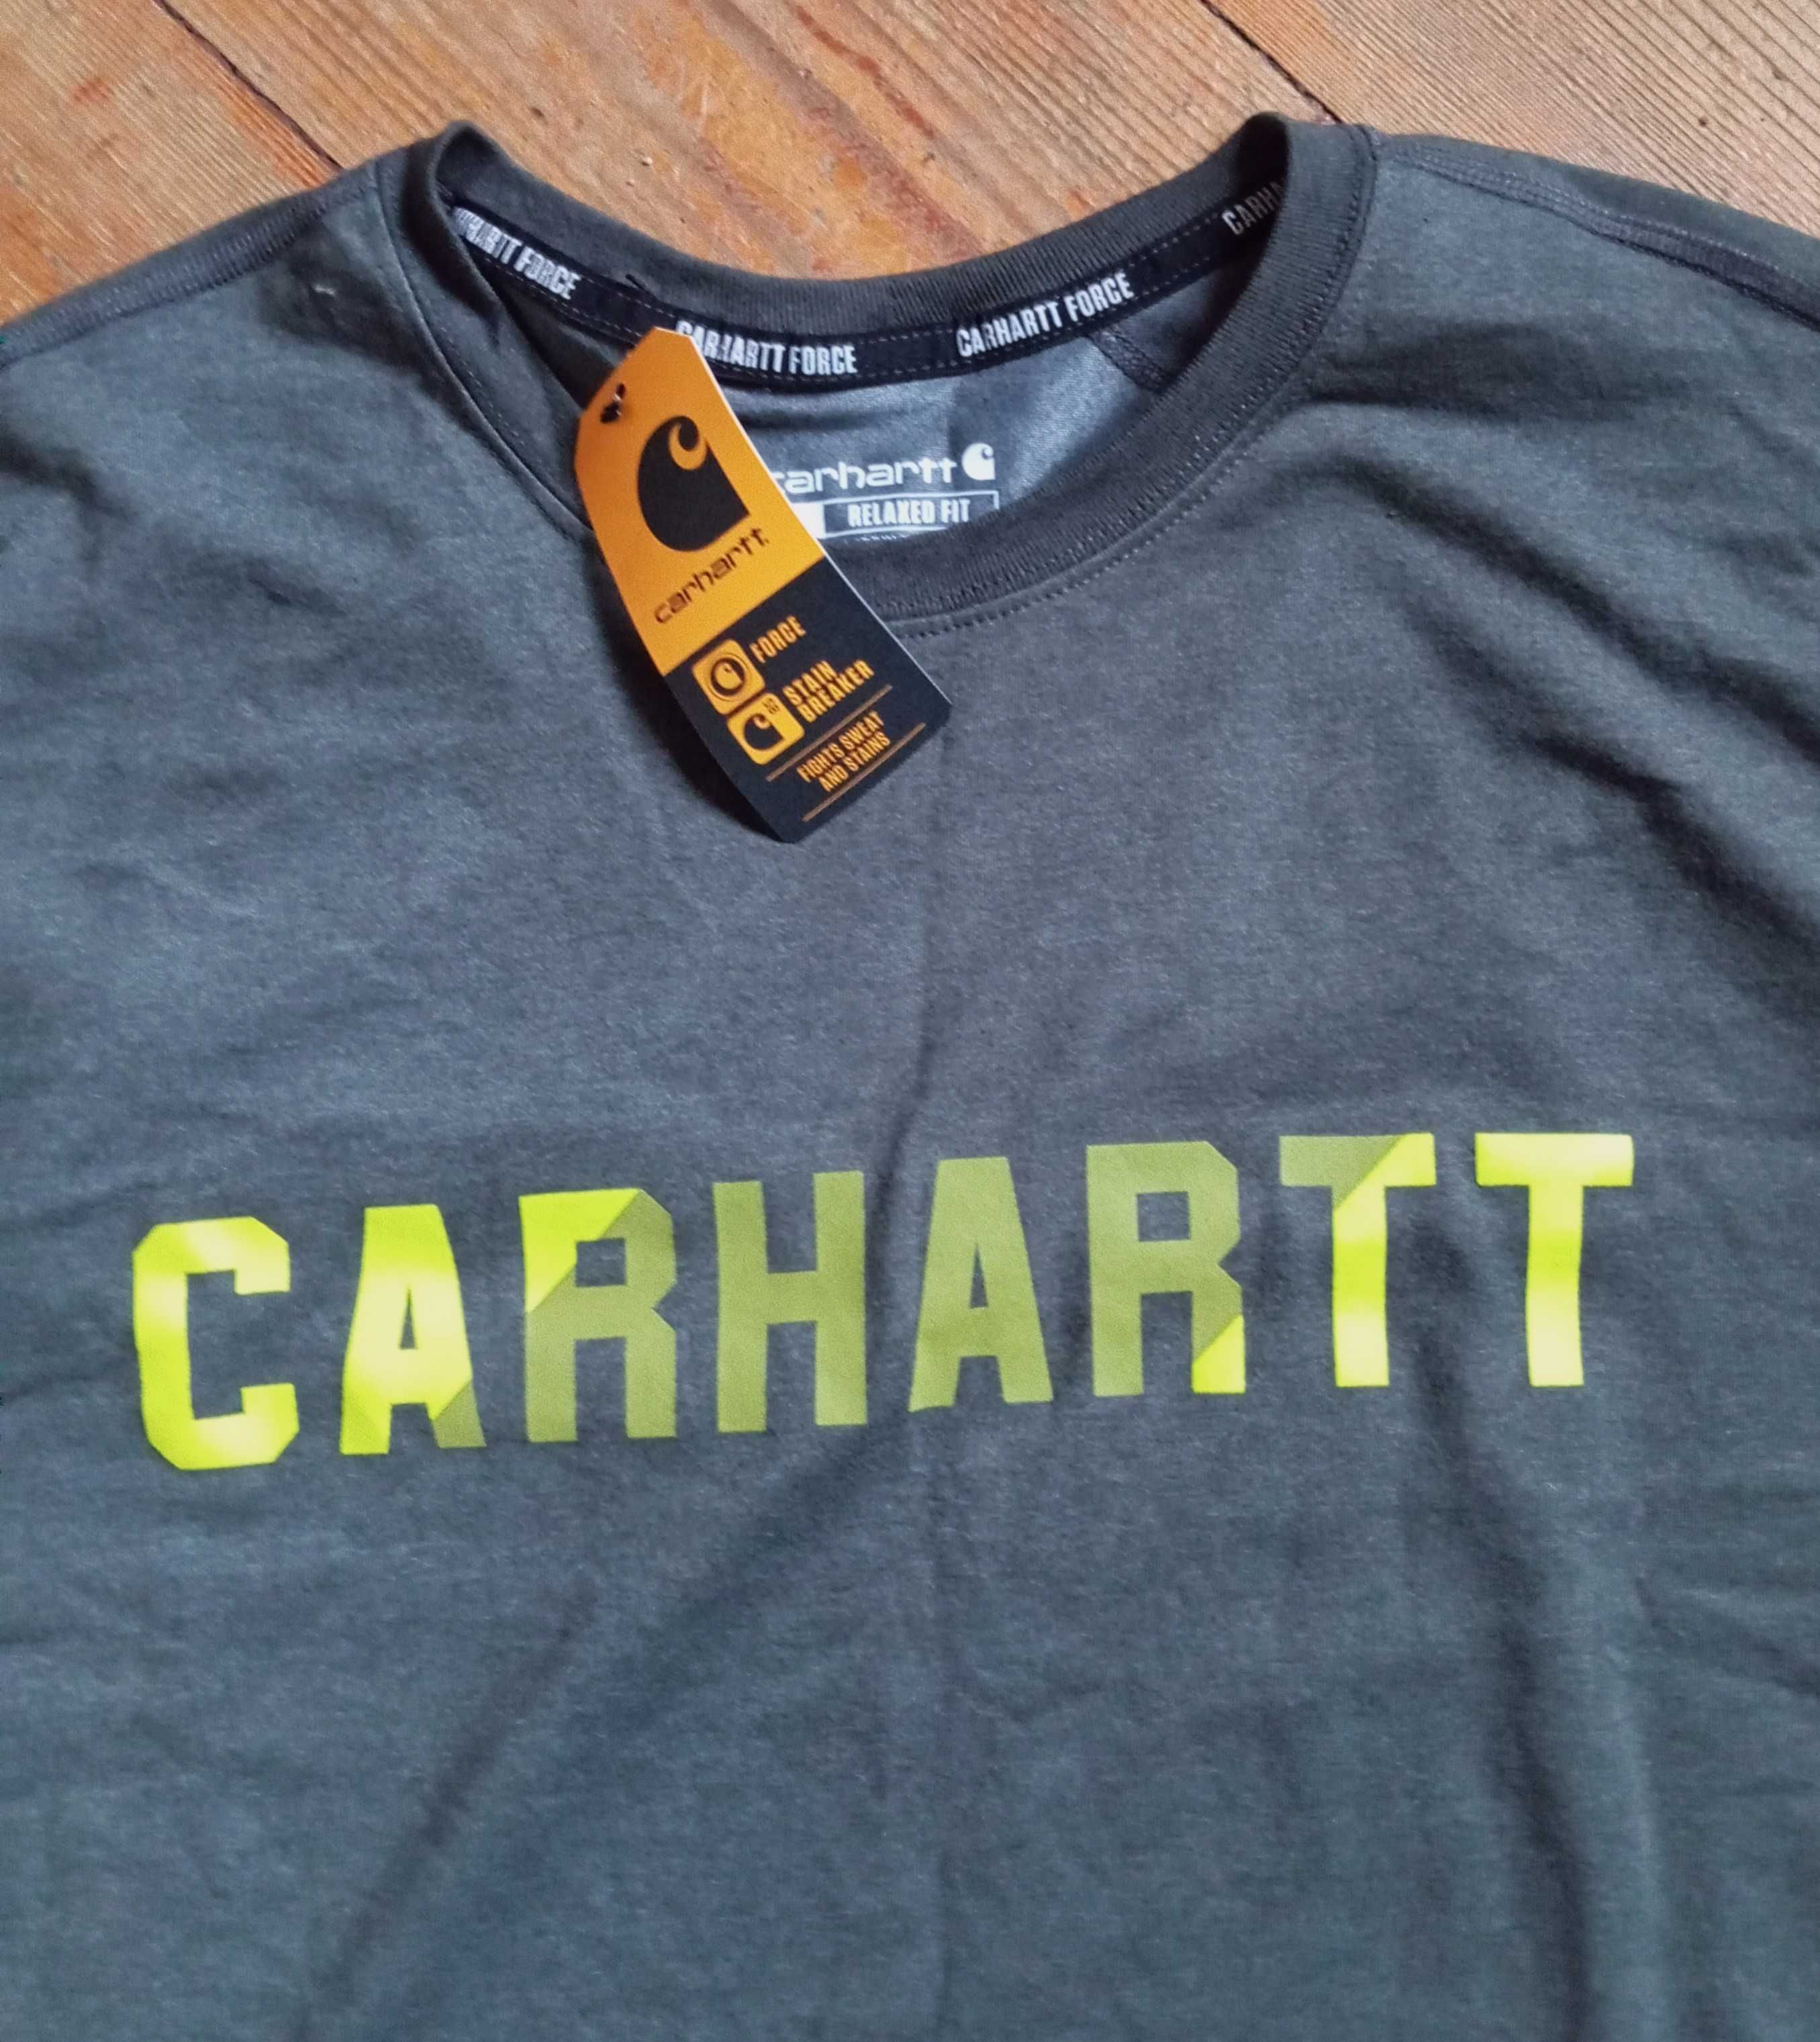 Carhartt męska koszulka / t-shirt, szary, rozm. XL, NOWA